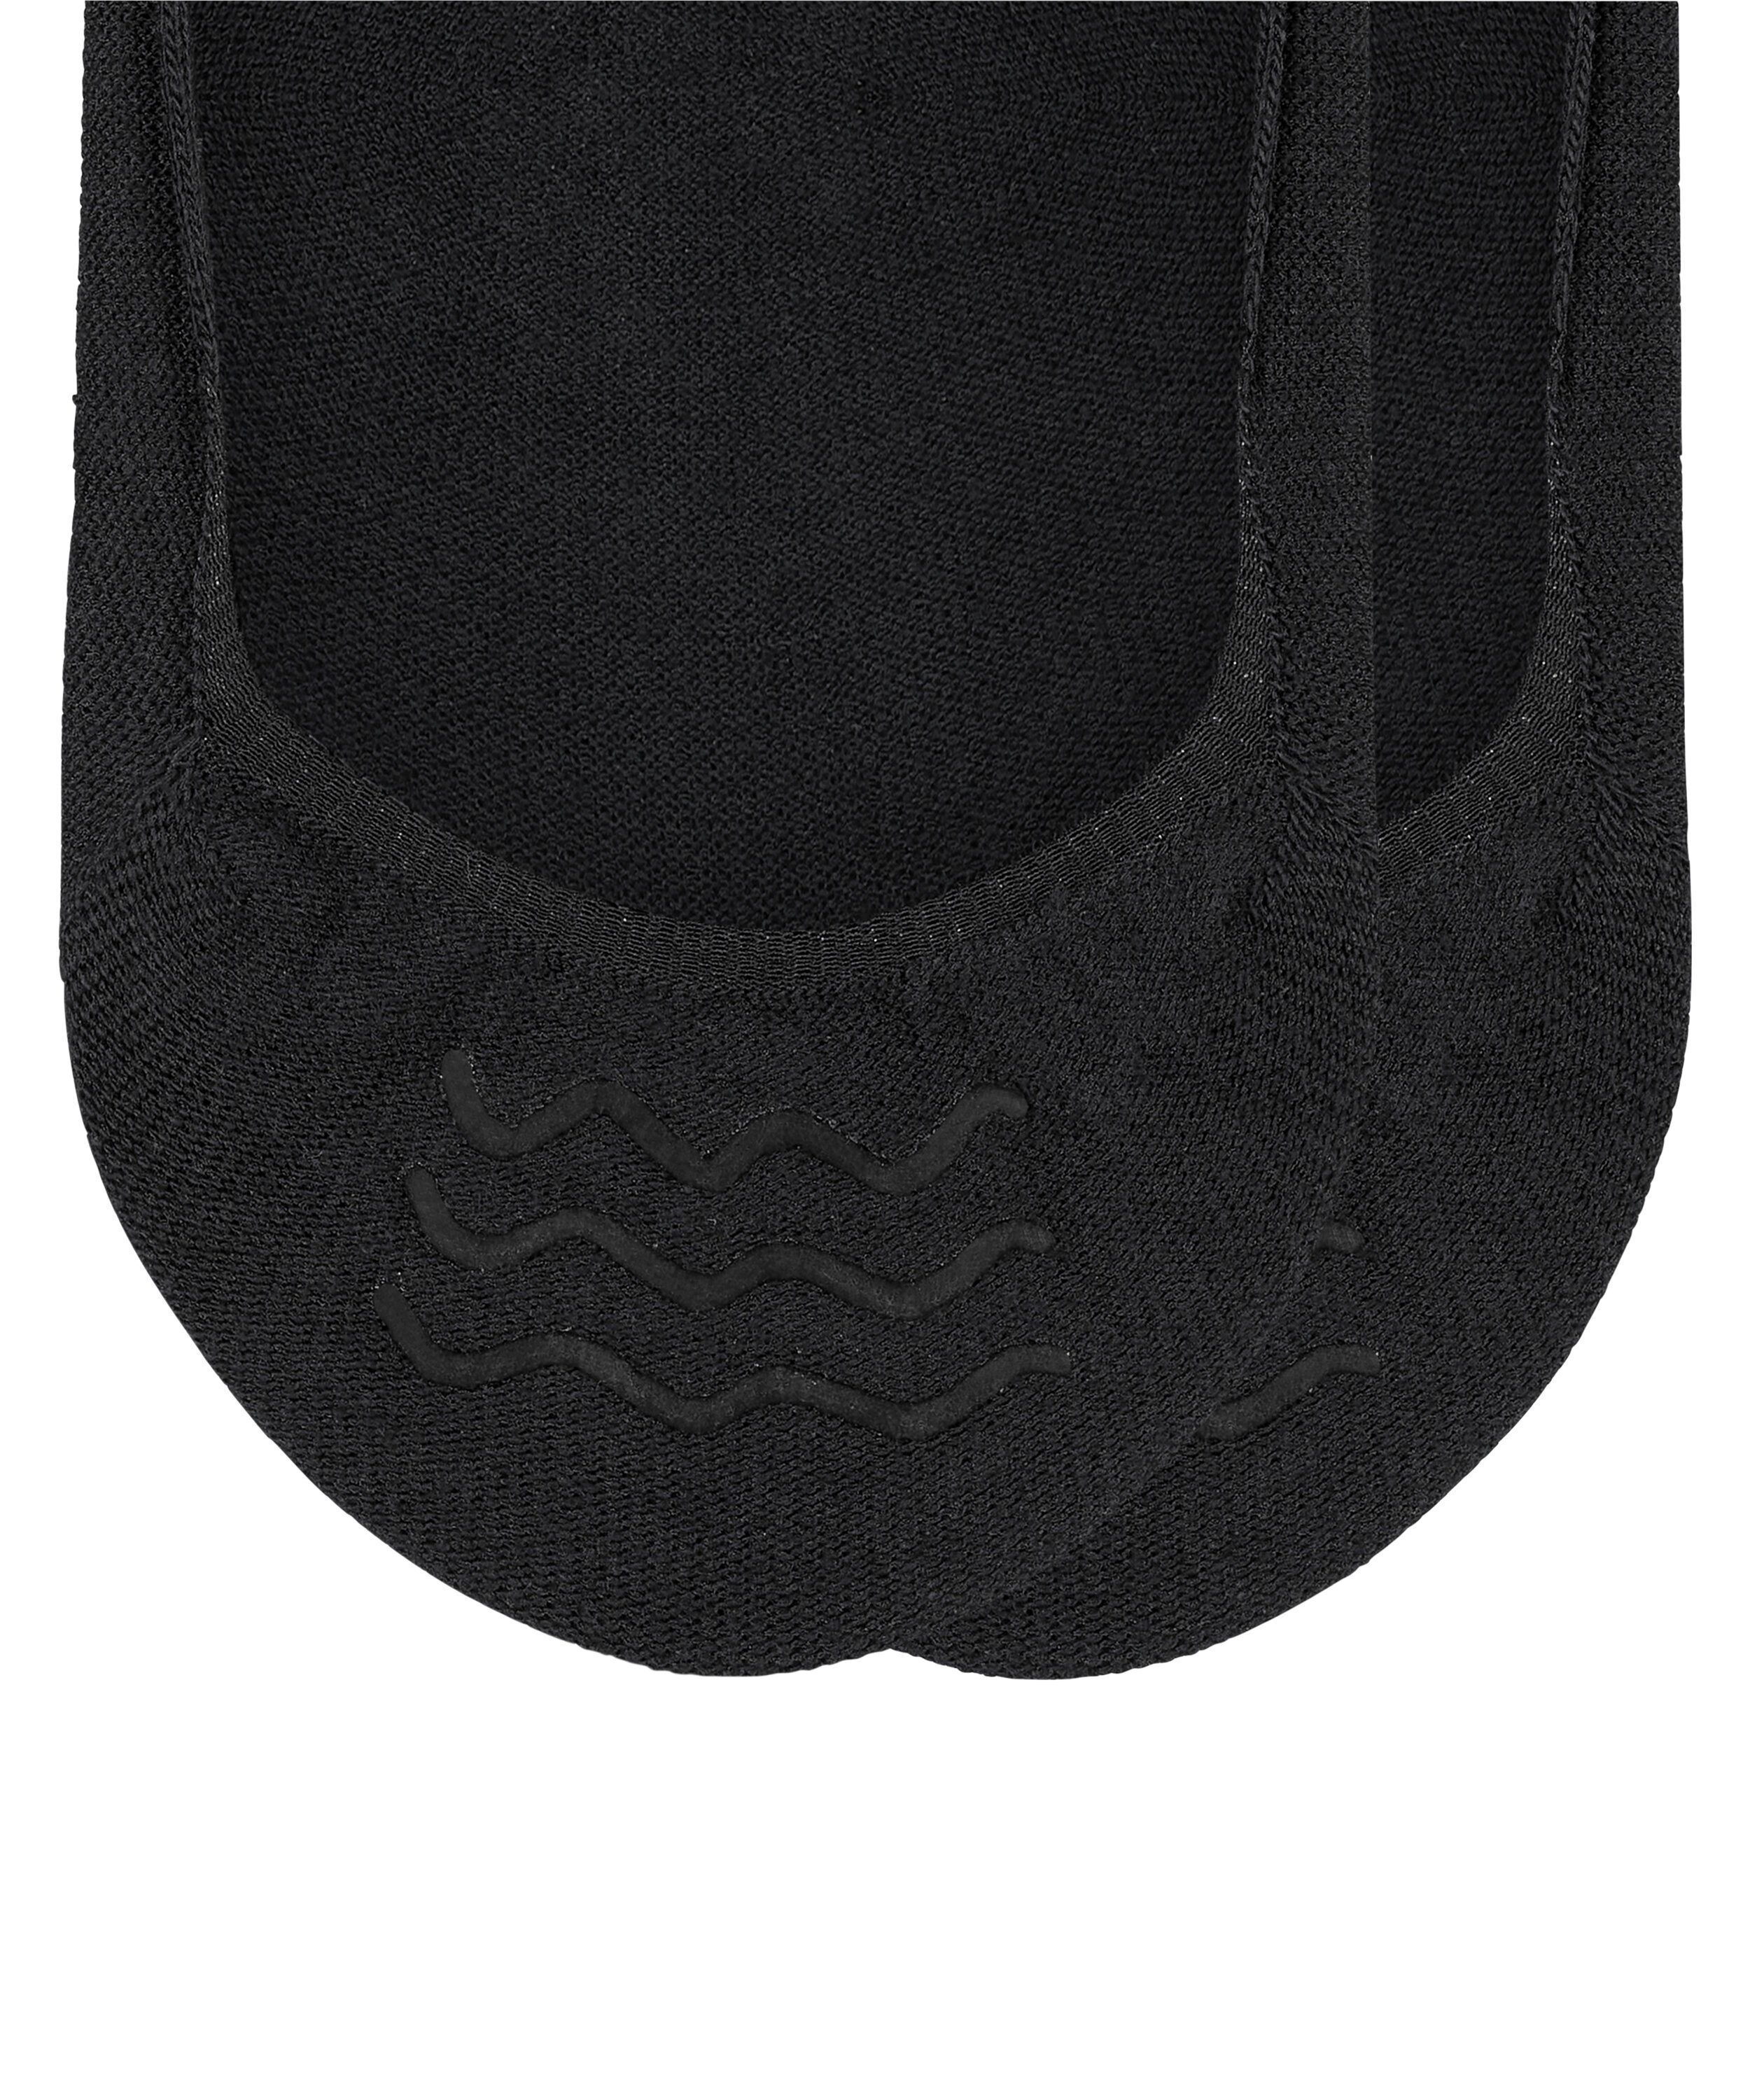 Füßlinge Esprit hautschmeichelnder Basic 2-Pack aus Baumwolle black Uni (3000)